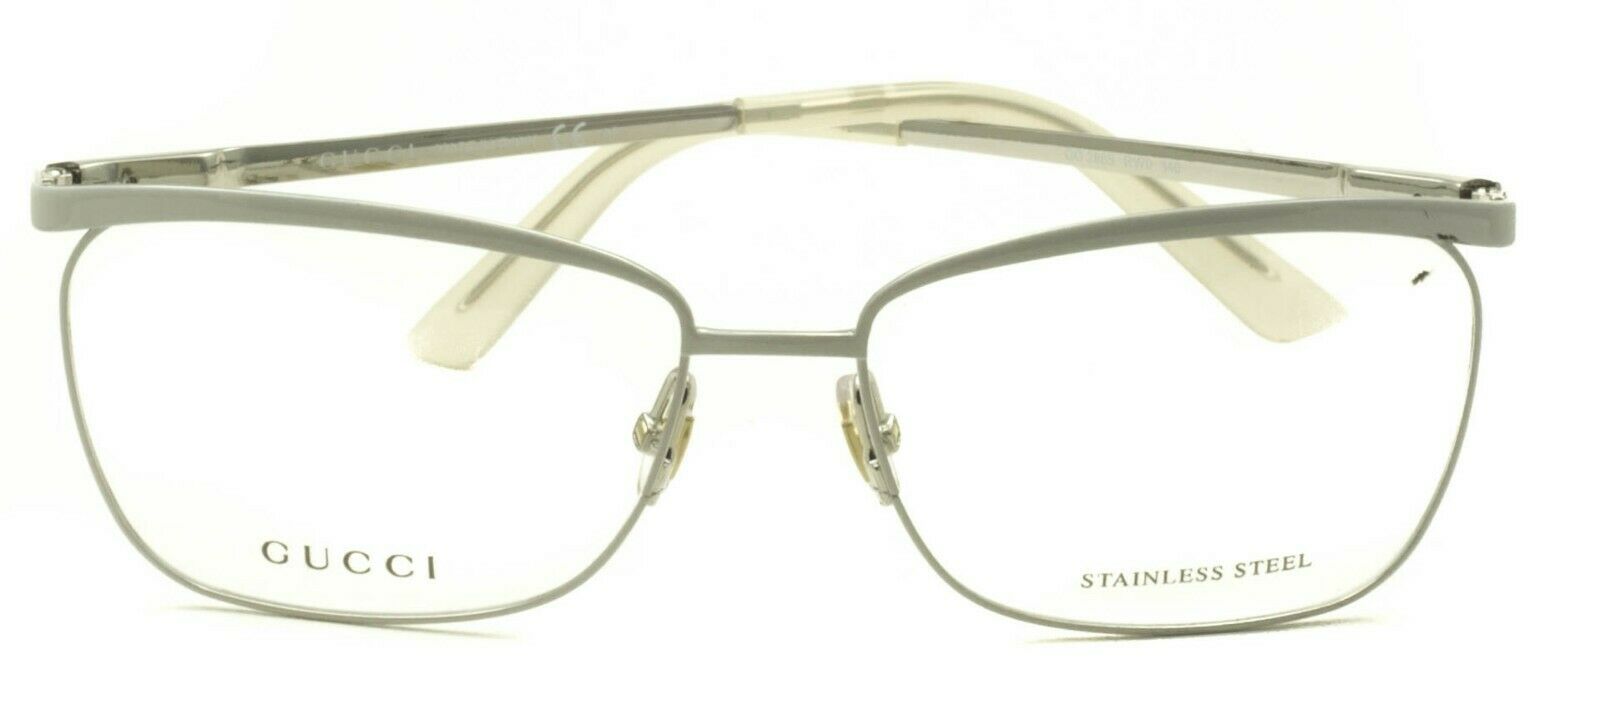 GUCCI GG 2885 RW0 Eyewear FRAMES Glasses RX Optical Eyeglasses New BNIB - Italy